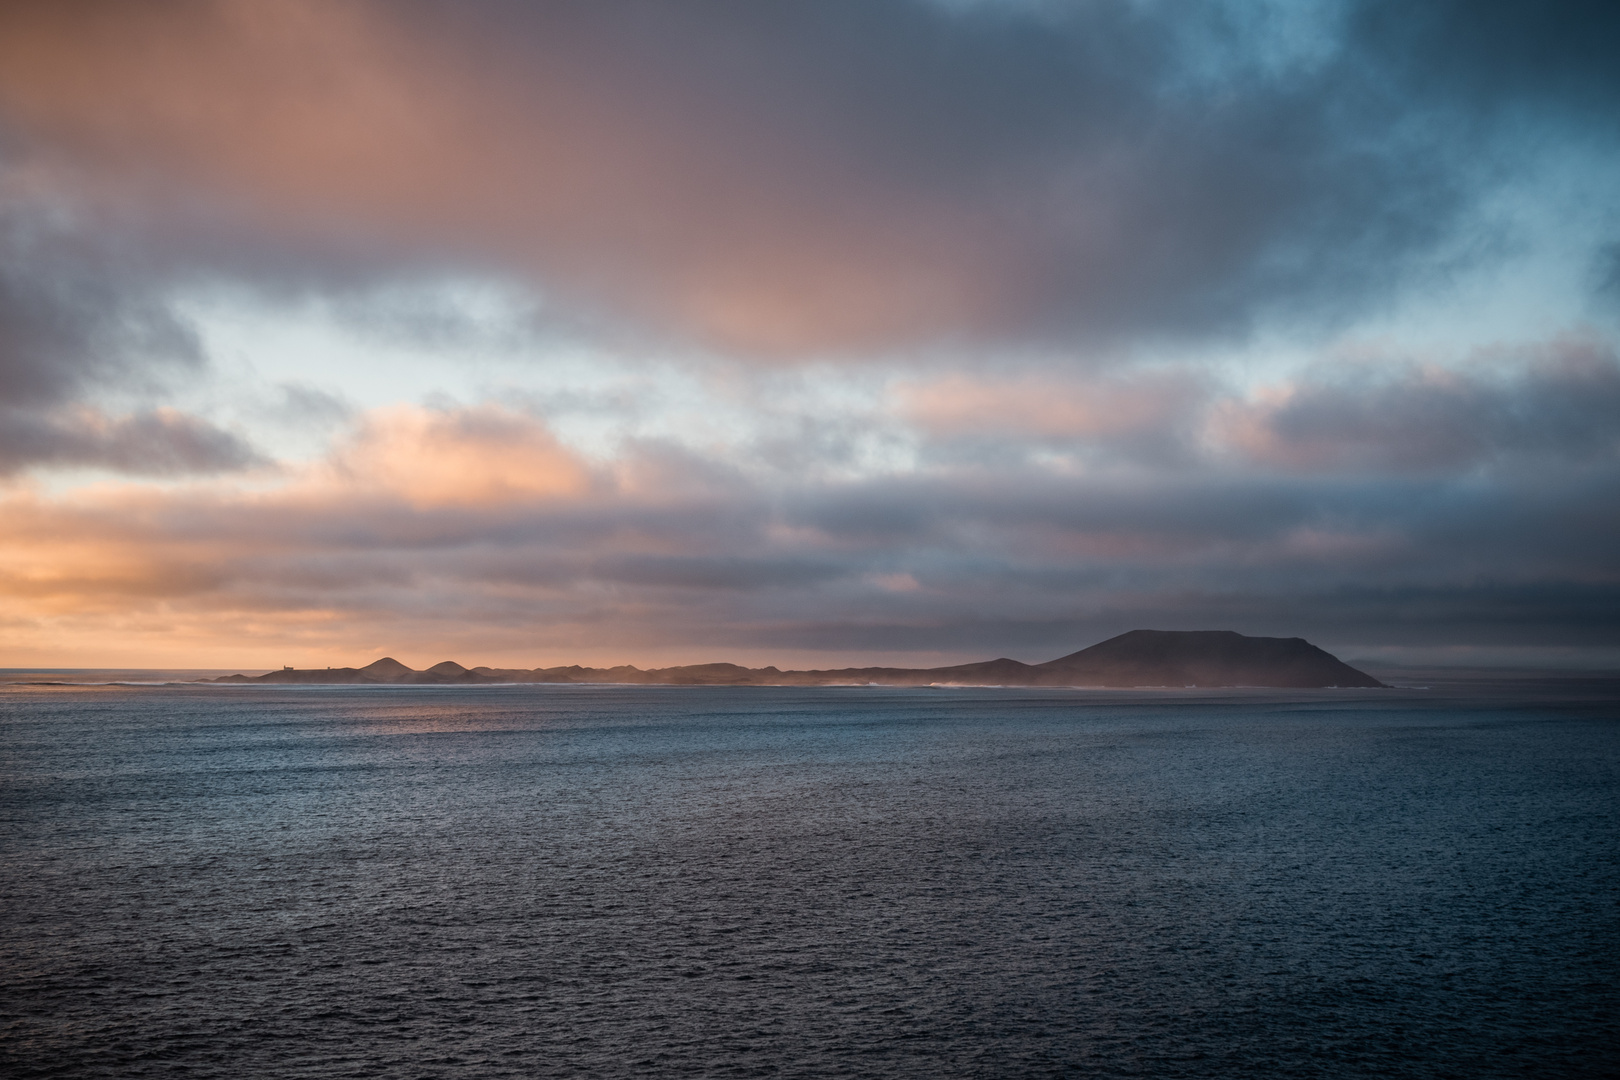 Isla de Lobos im Morgenlicht